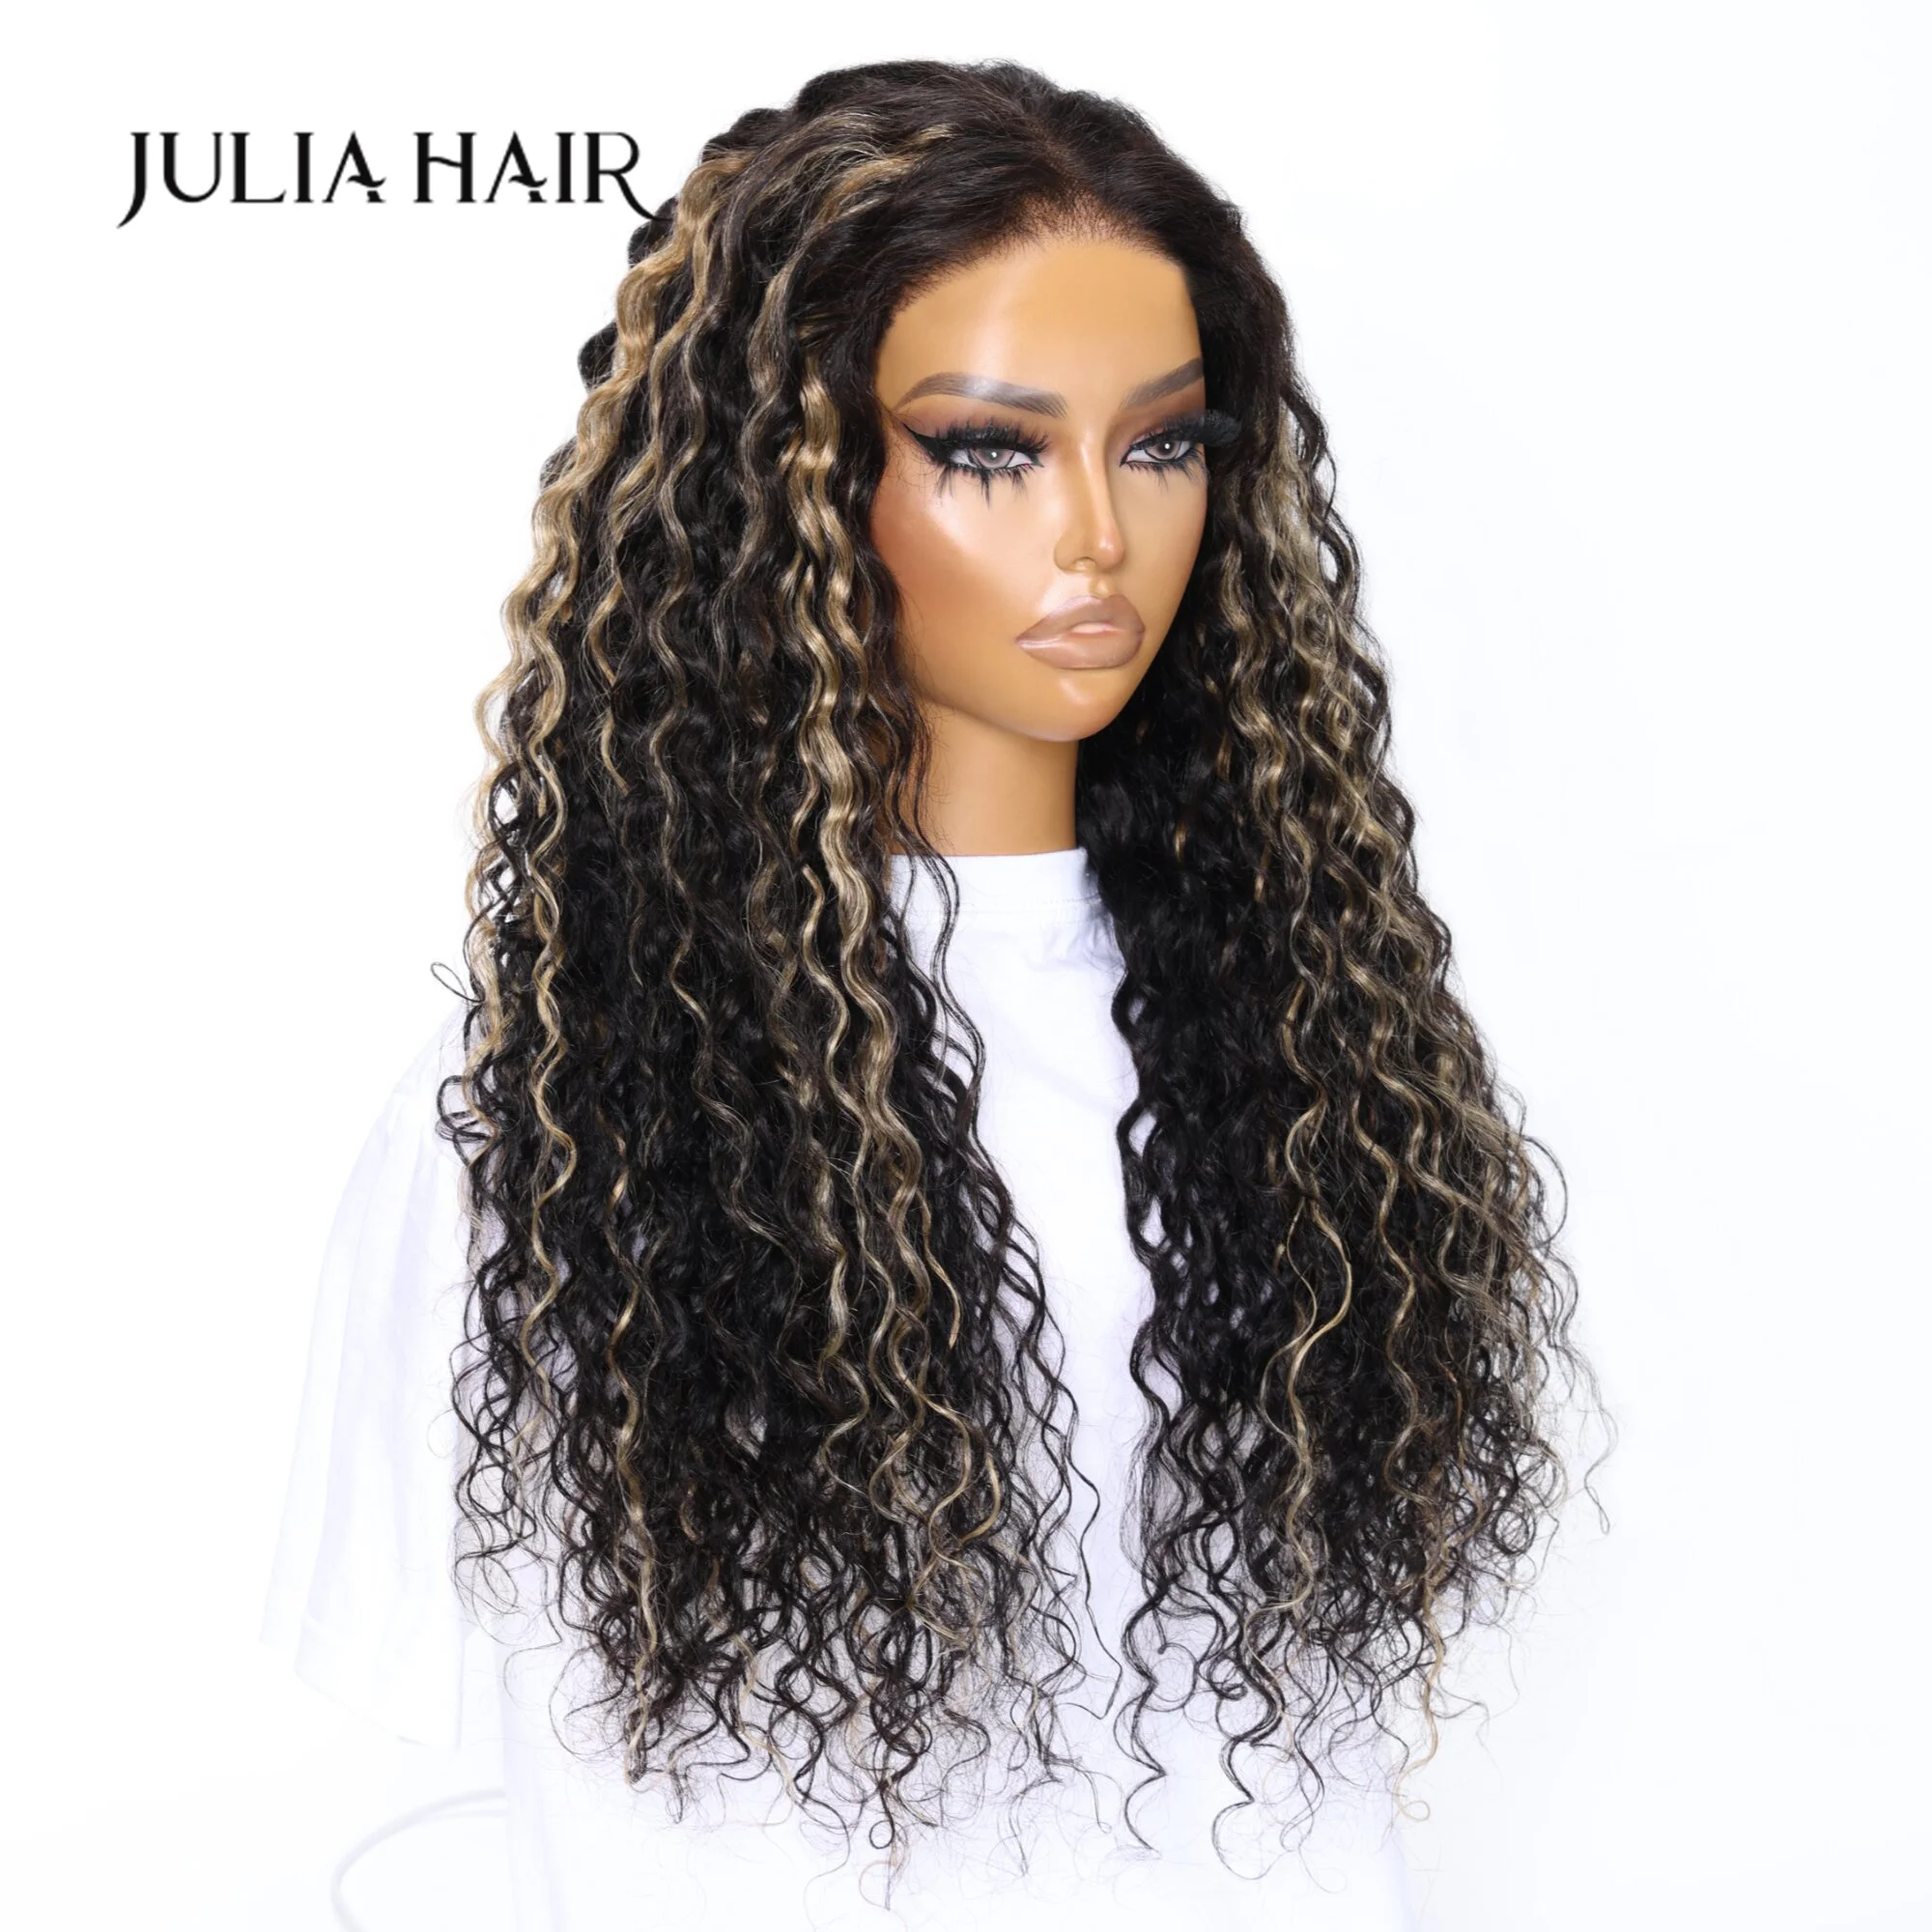 Julia Hair Wear Go Pre Cut 6x4.75 Кружевной Черный С Мелированием Блондинок Bouncy Water Wave TN27 Бесклеевой С Дышащей Шапочкой Воздушный Парик